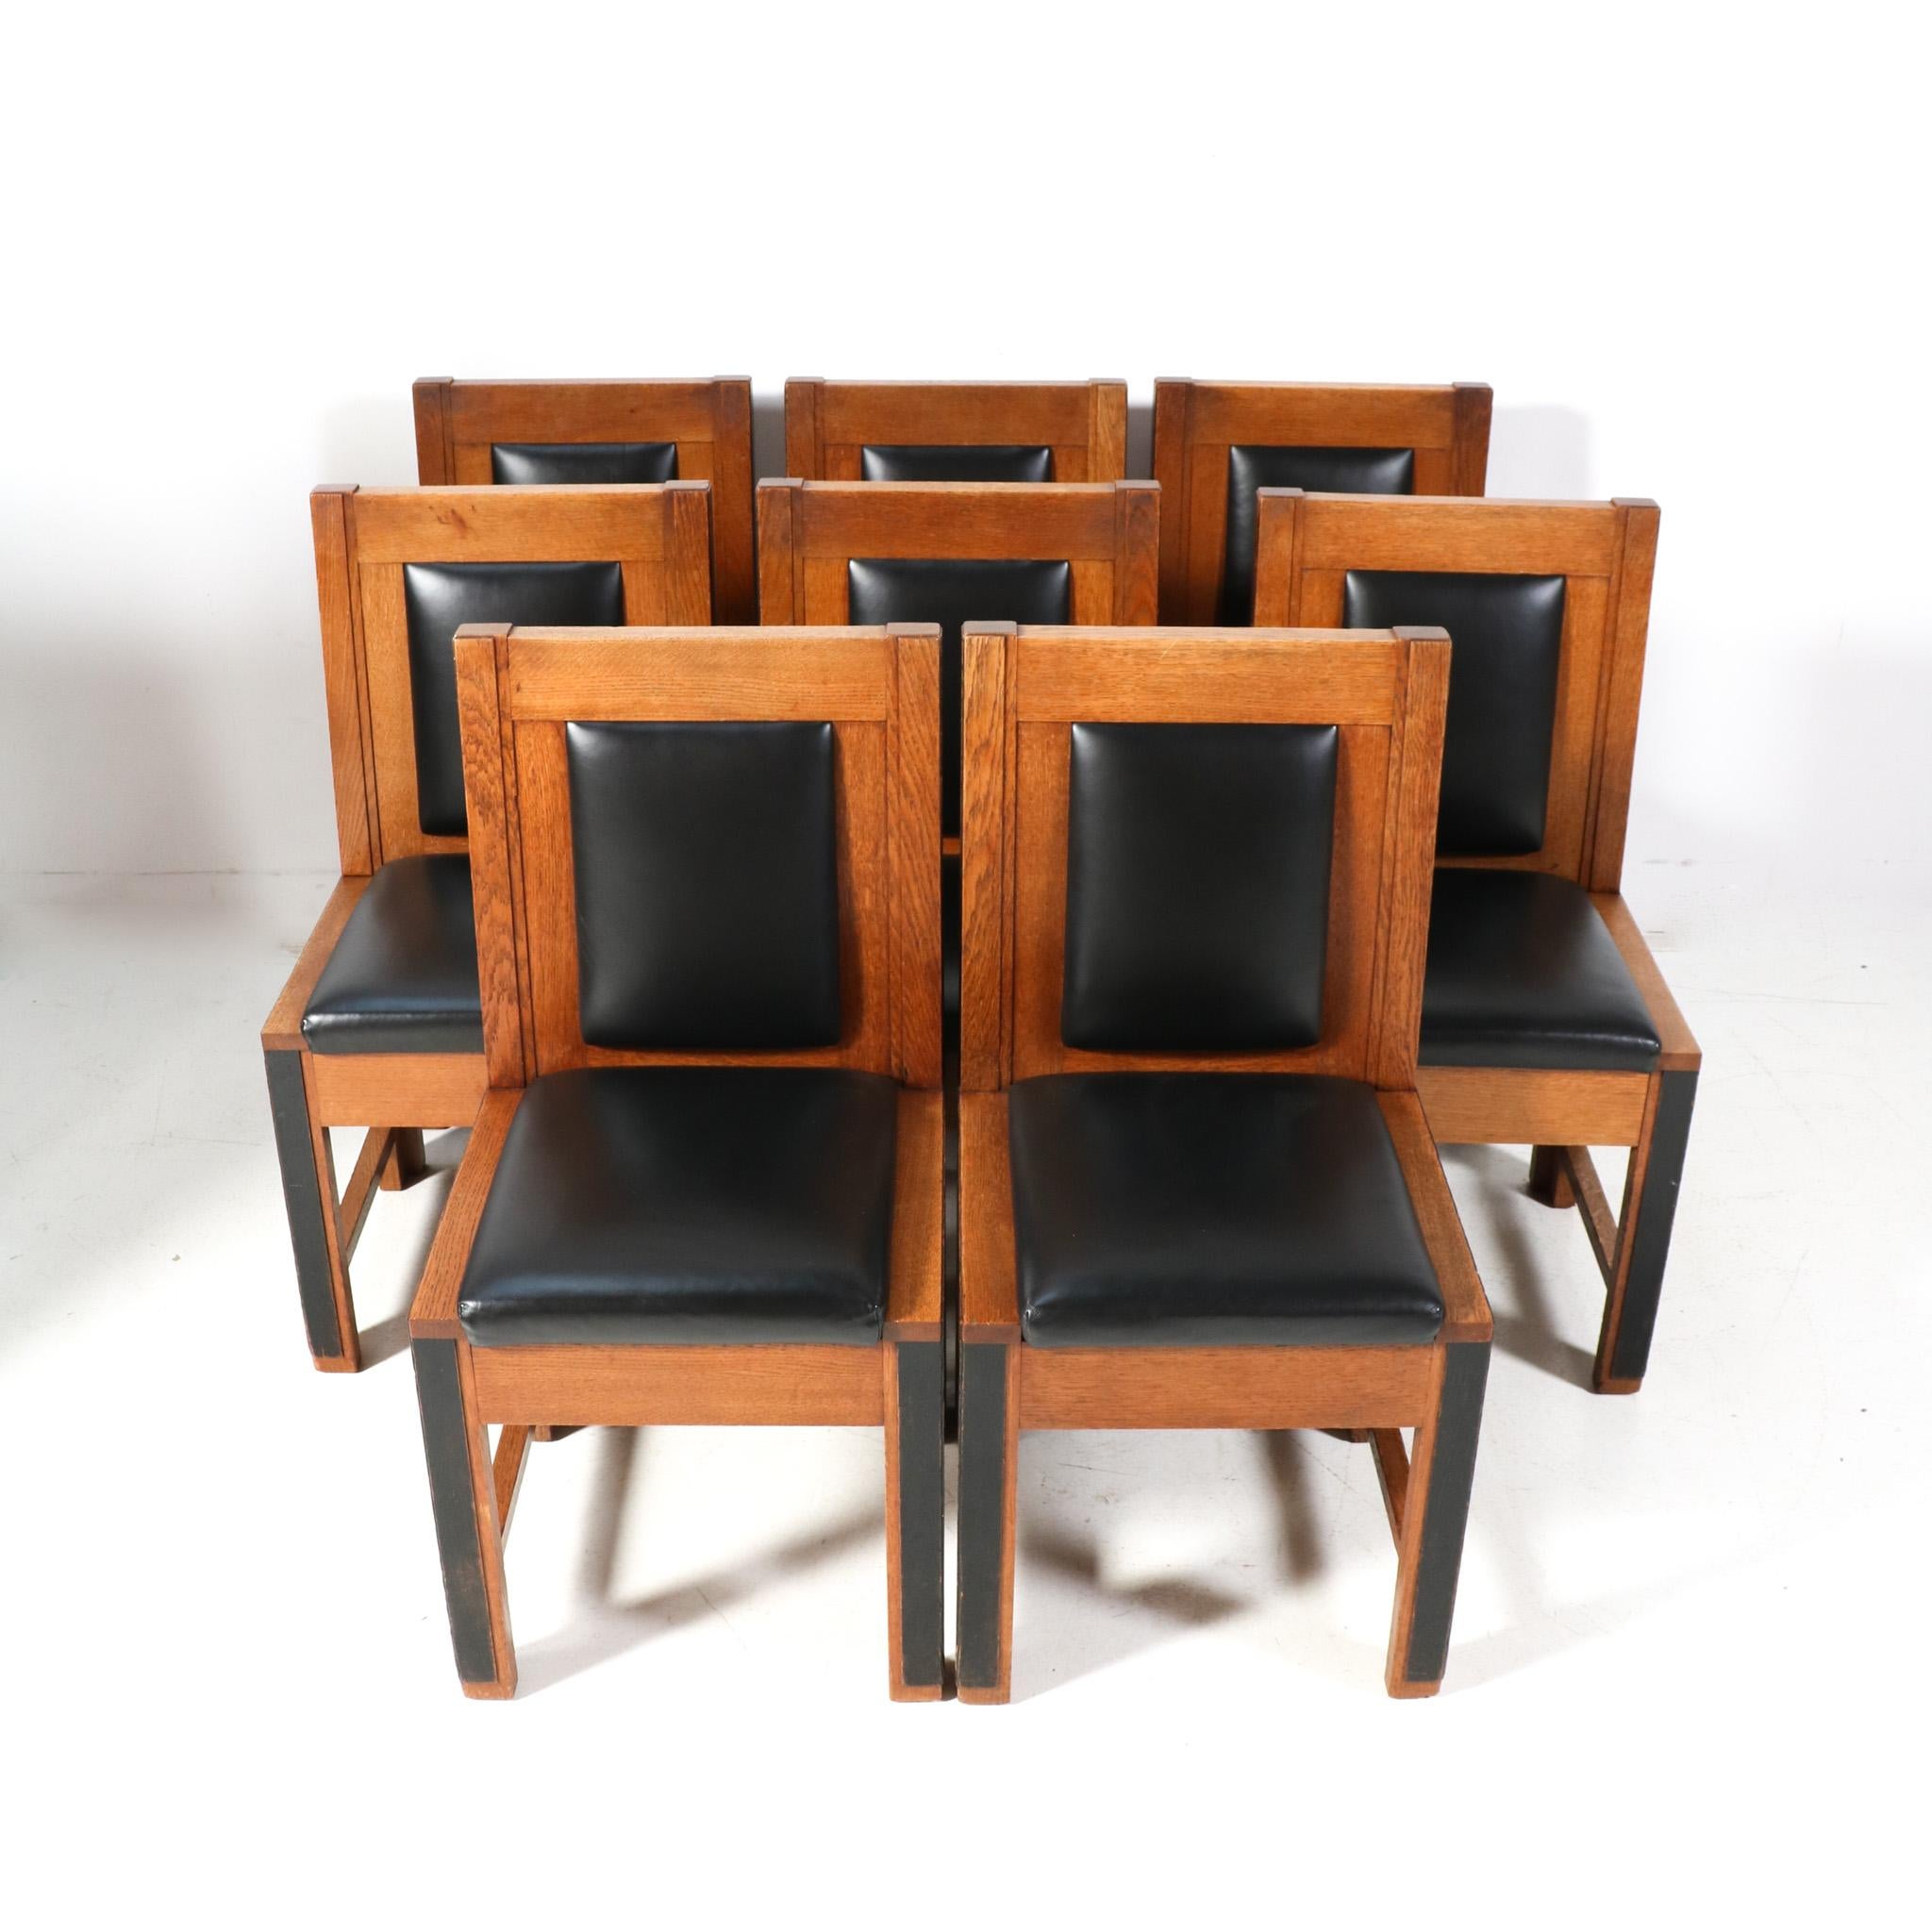 Prächtiger und seltener Satz von acht Art Deco Modernist Stühlen.
Dieser Achter-Satz wurde von Fa entworfen und hergestellt. Randoe Haarlem für das Rathaus von Haarlem.
Auffälliges niederländisches Design aus den 1920er Jahren.
Massive